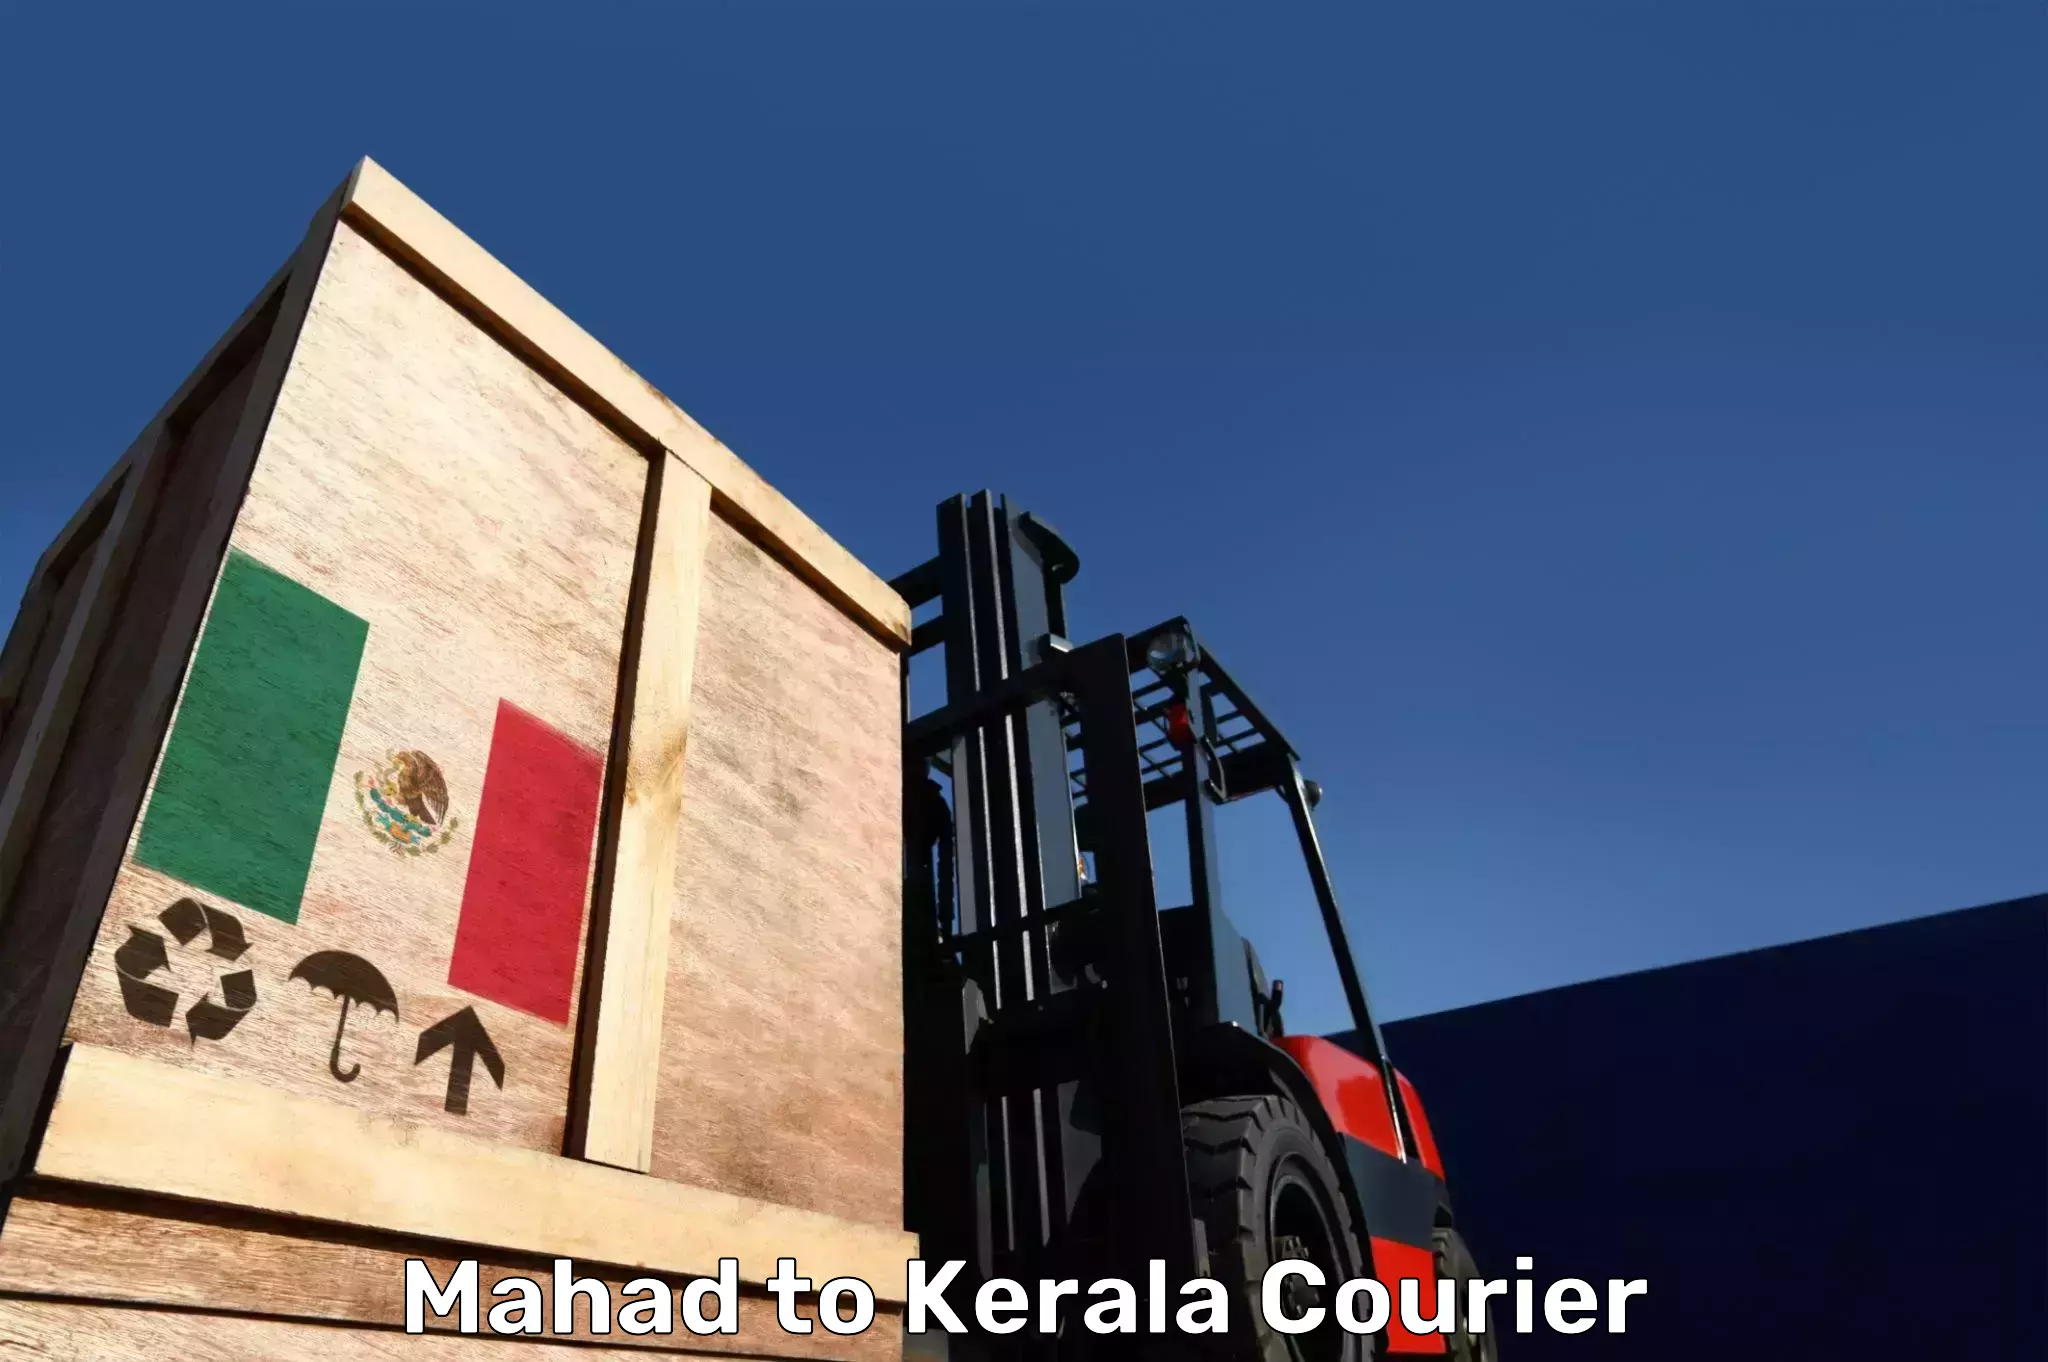 Hassle-free luggage shipping Mahad to Kakkayam